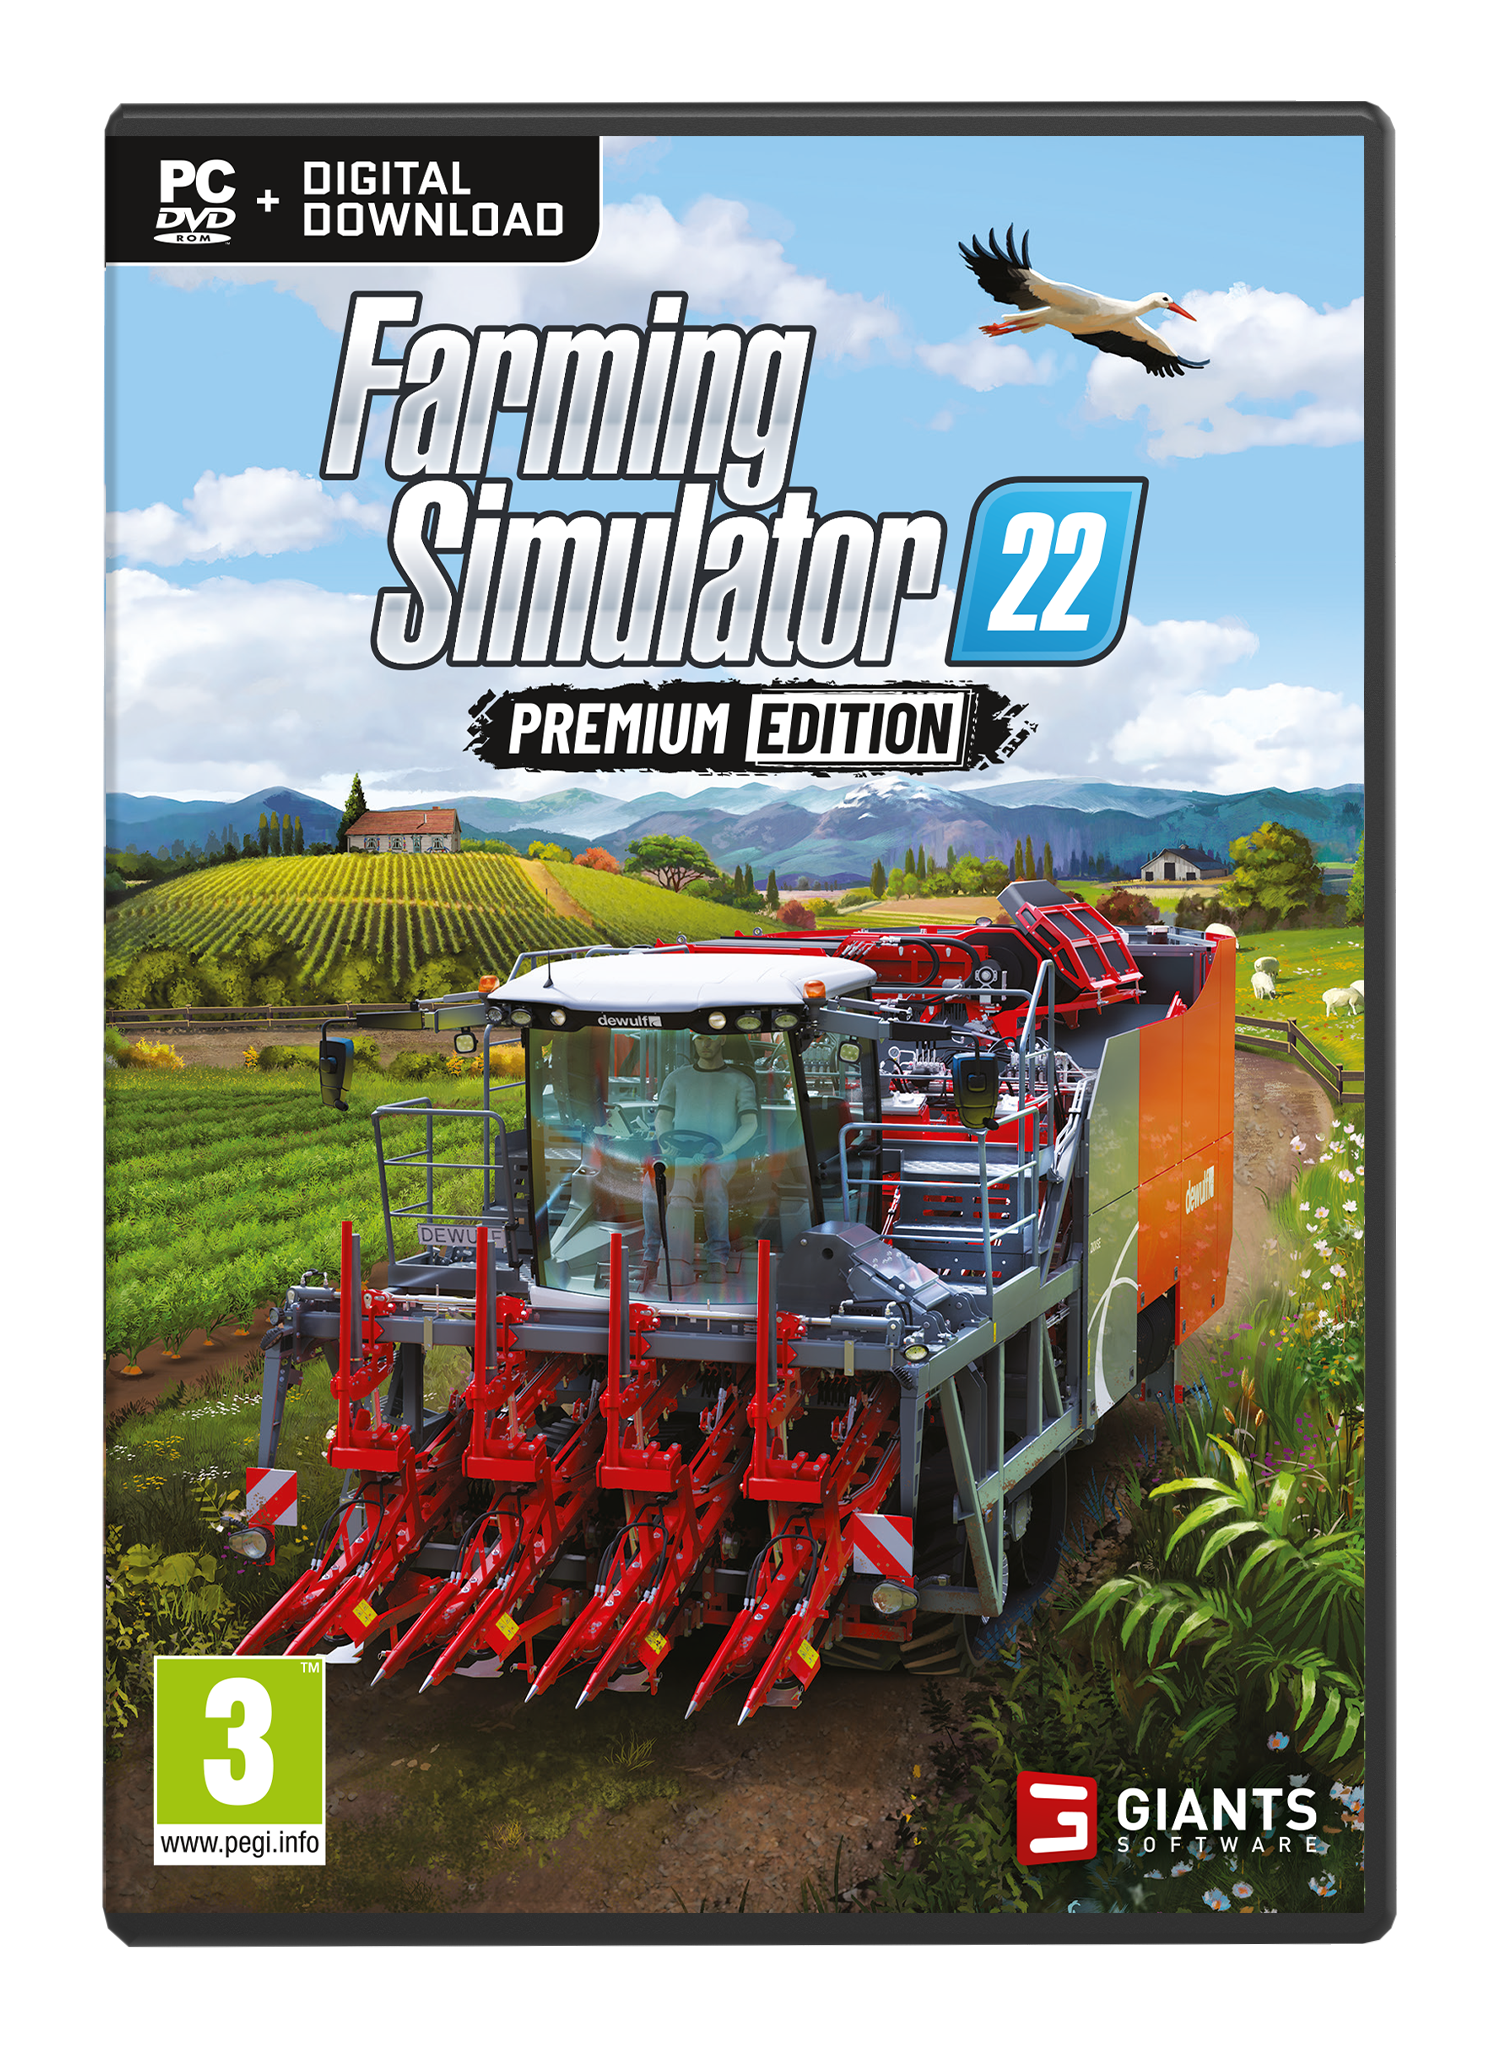 Buy Farming Simulator 22 Premium Edition - PC - Premium Edition